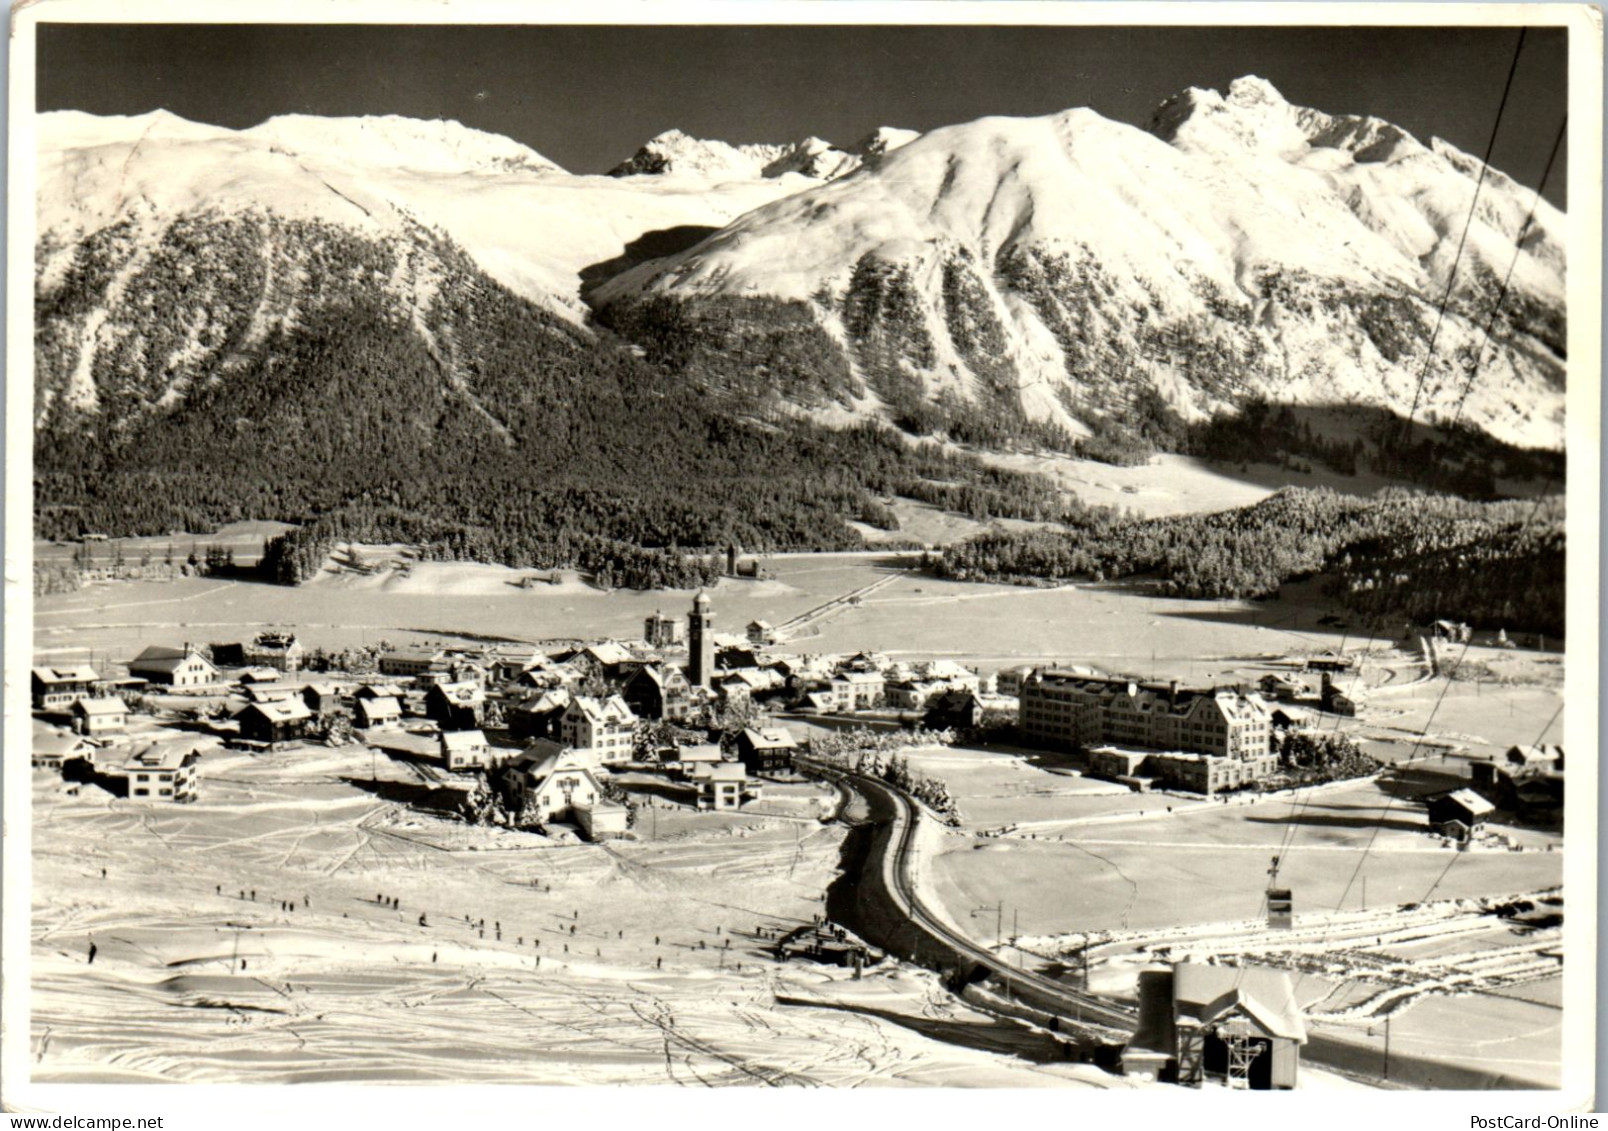 50522 - Schweiz - Celerina , Schlarigna , Oberengadin , Panorama - Gelaufen 1966 - Celerina/Schlarigna